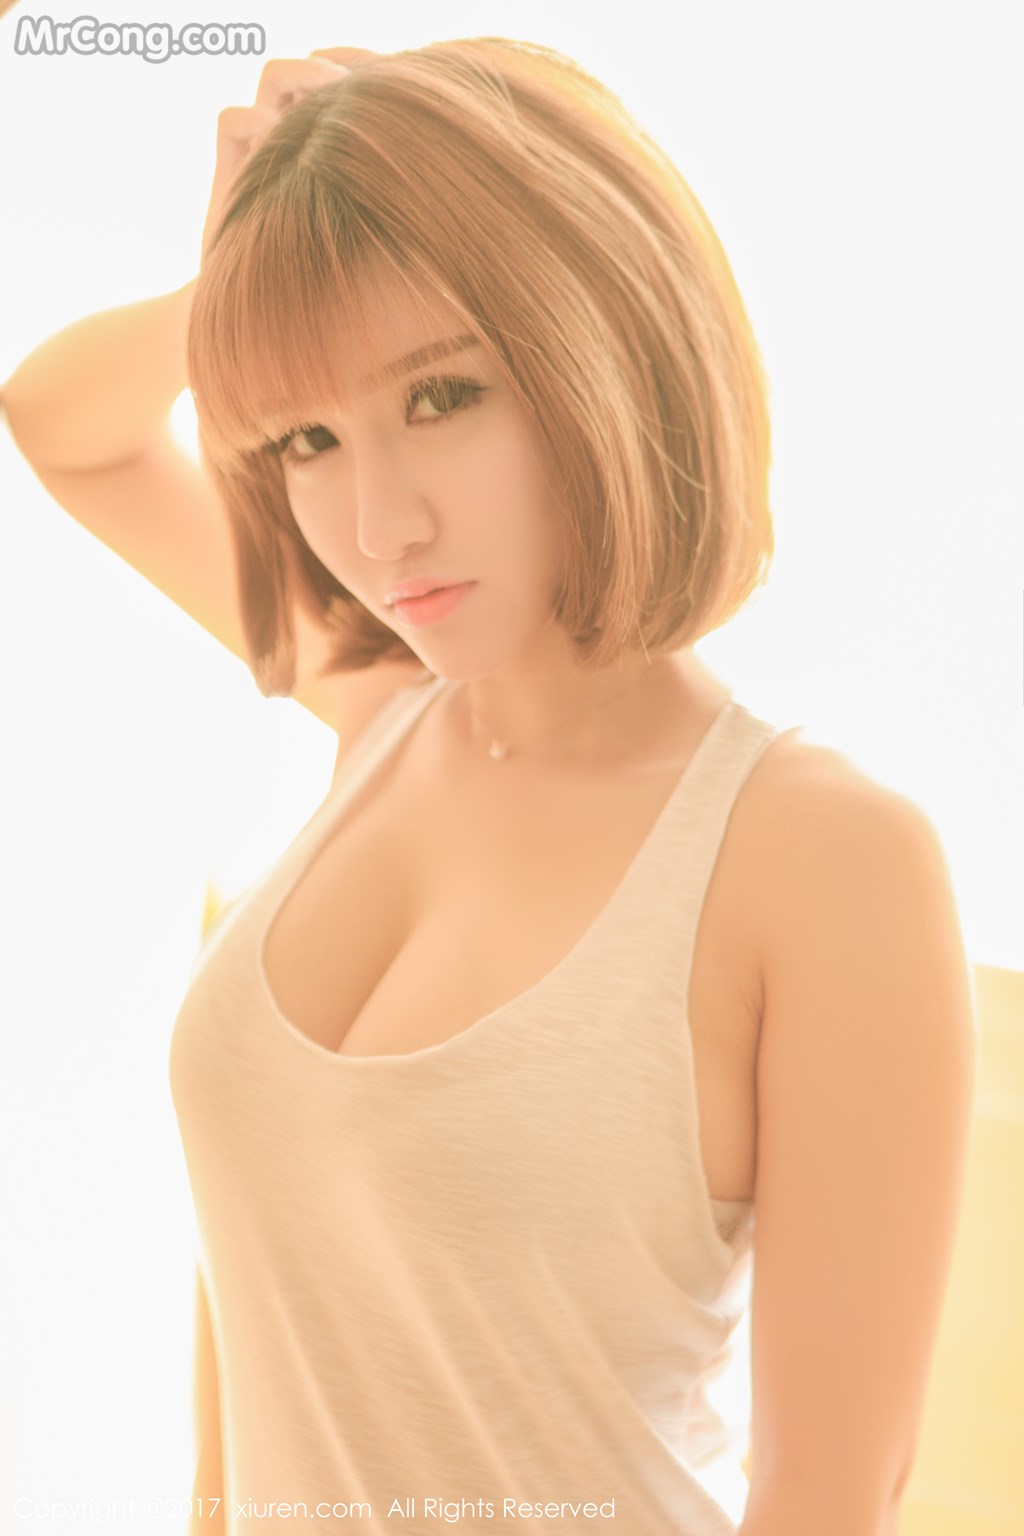 XIUREN No. 722: Model Aojiao Meng Meng (K8 傲 娇 萌萌 Vivian) (63 photos)